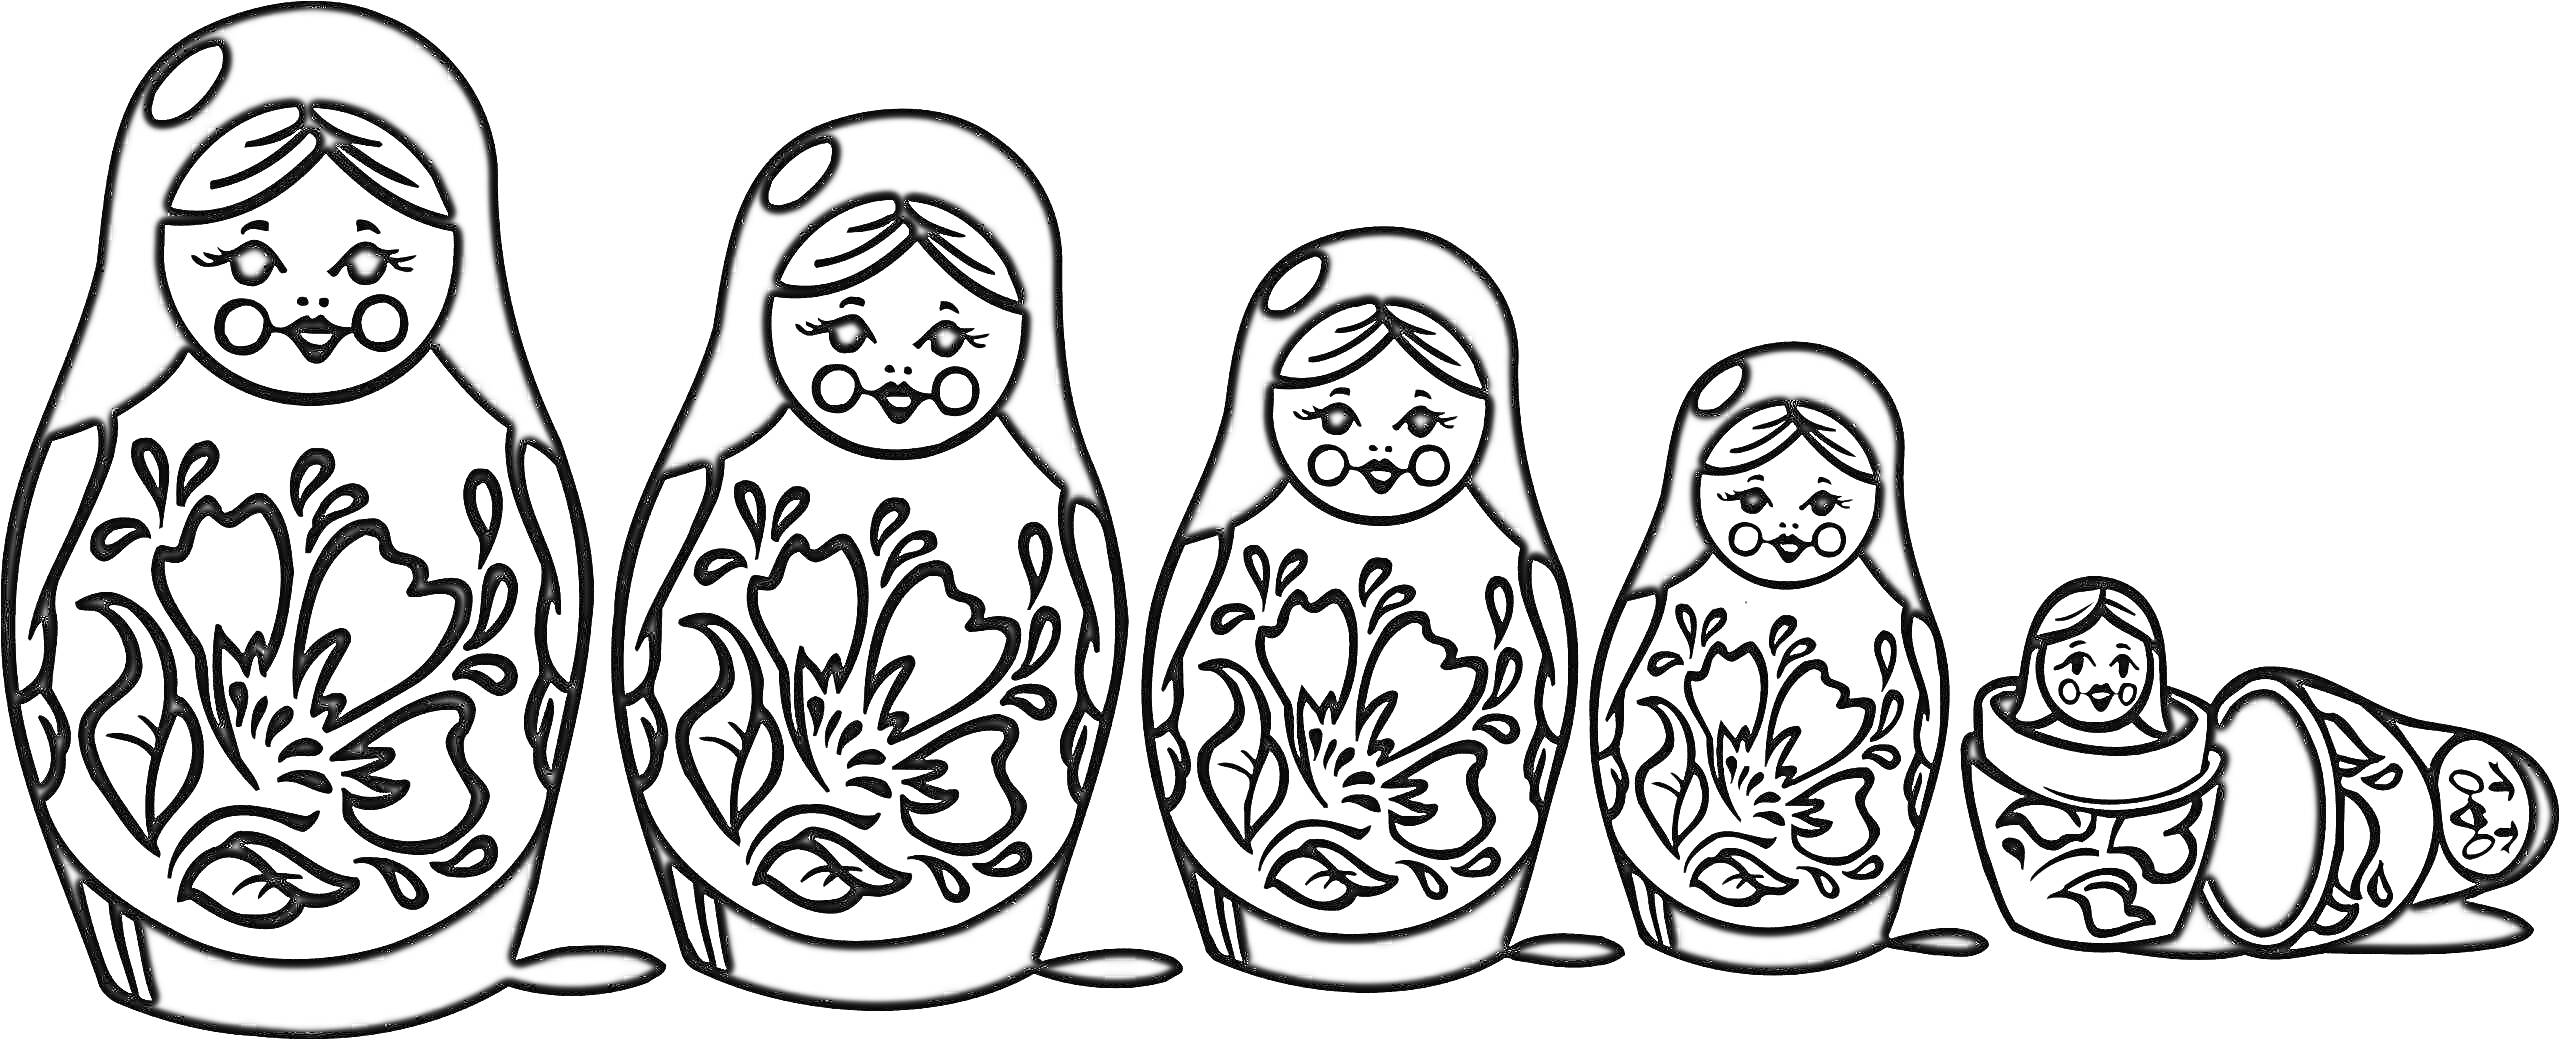 Раскраска Матрешка с цветочным узором из пяти кукол, одна из которых разобрана на две половинки с куклой внутри